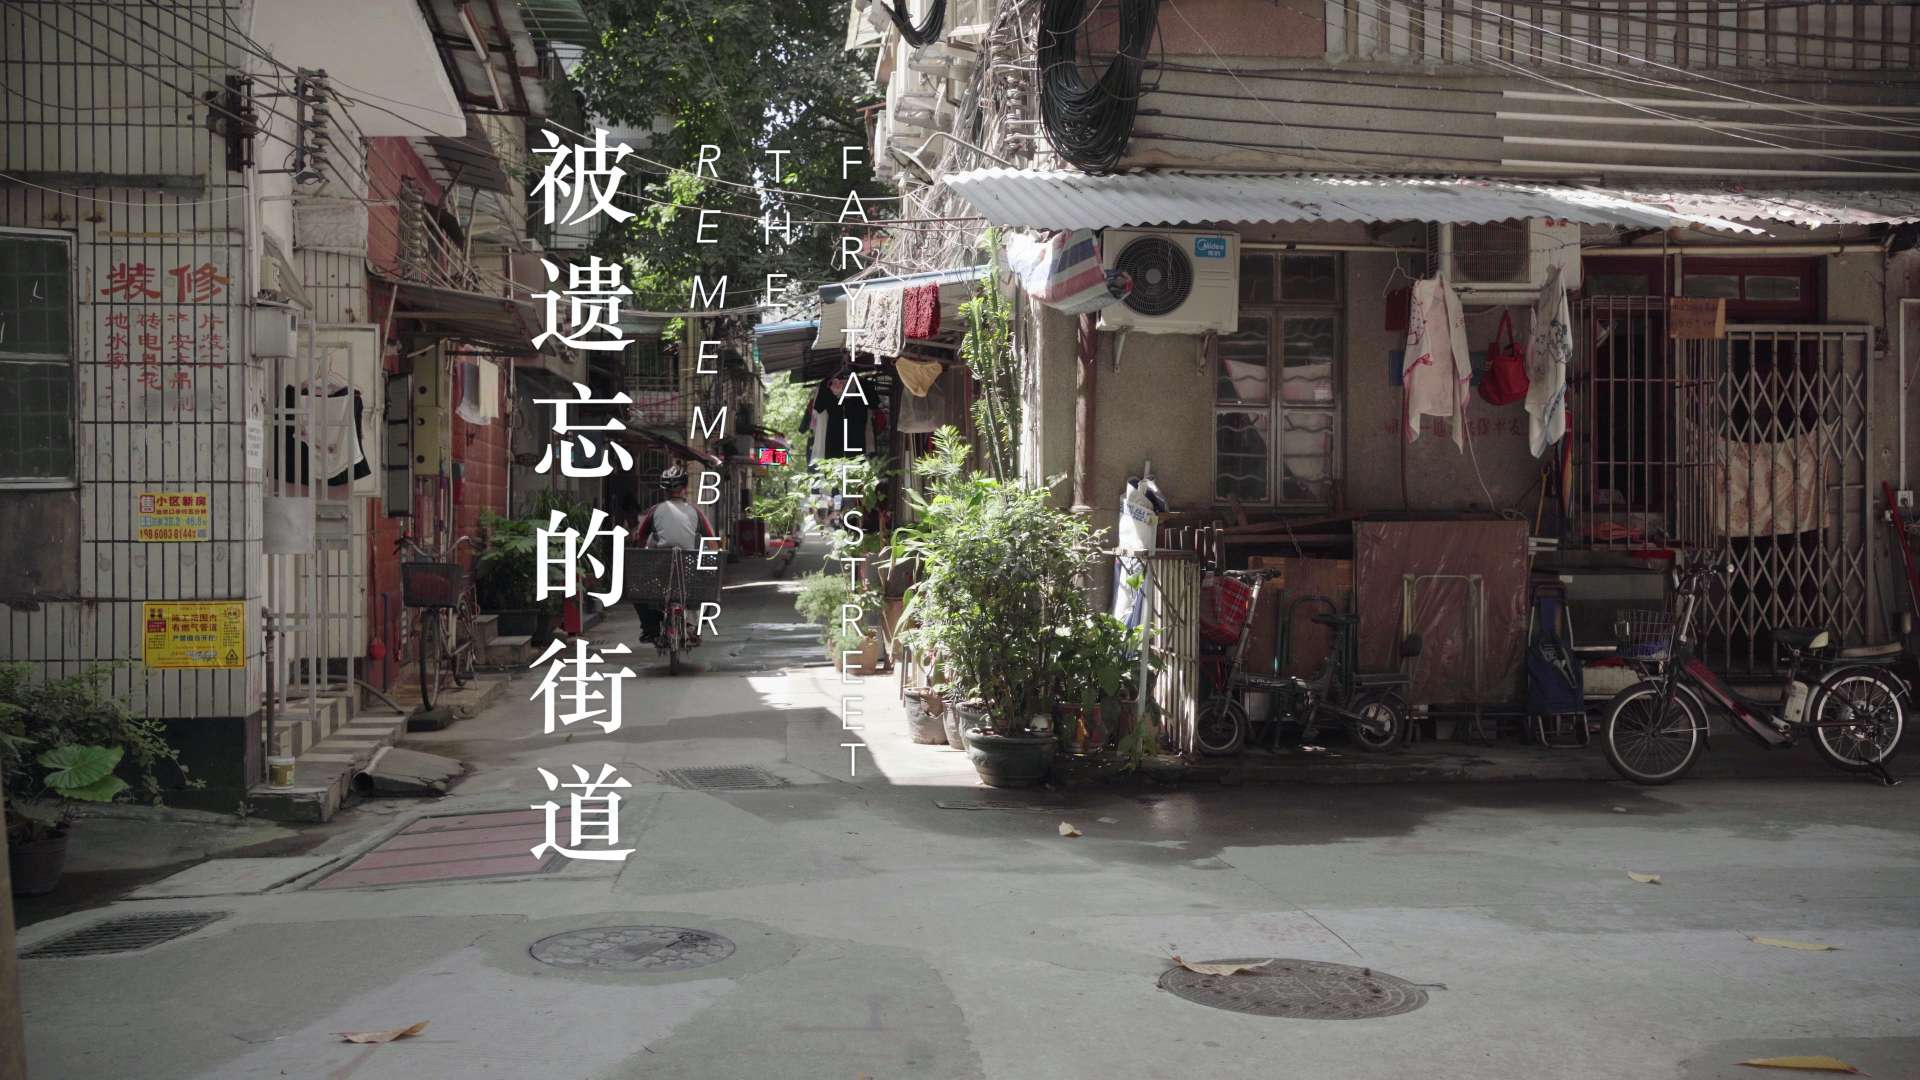 广州老城拾遗短片《被遗忘的街道》